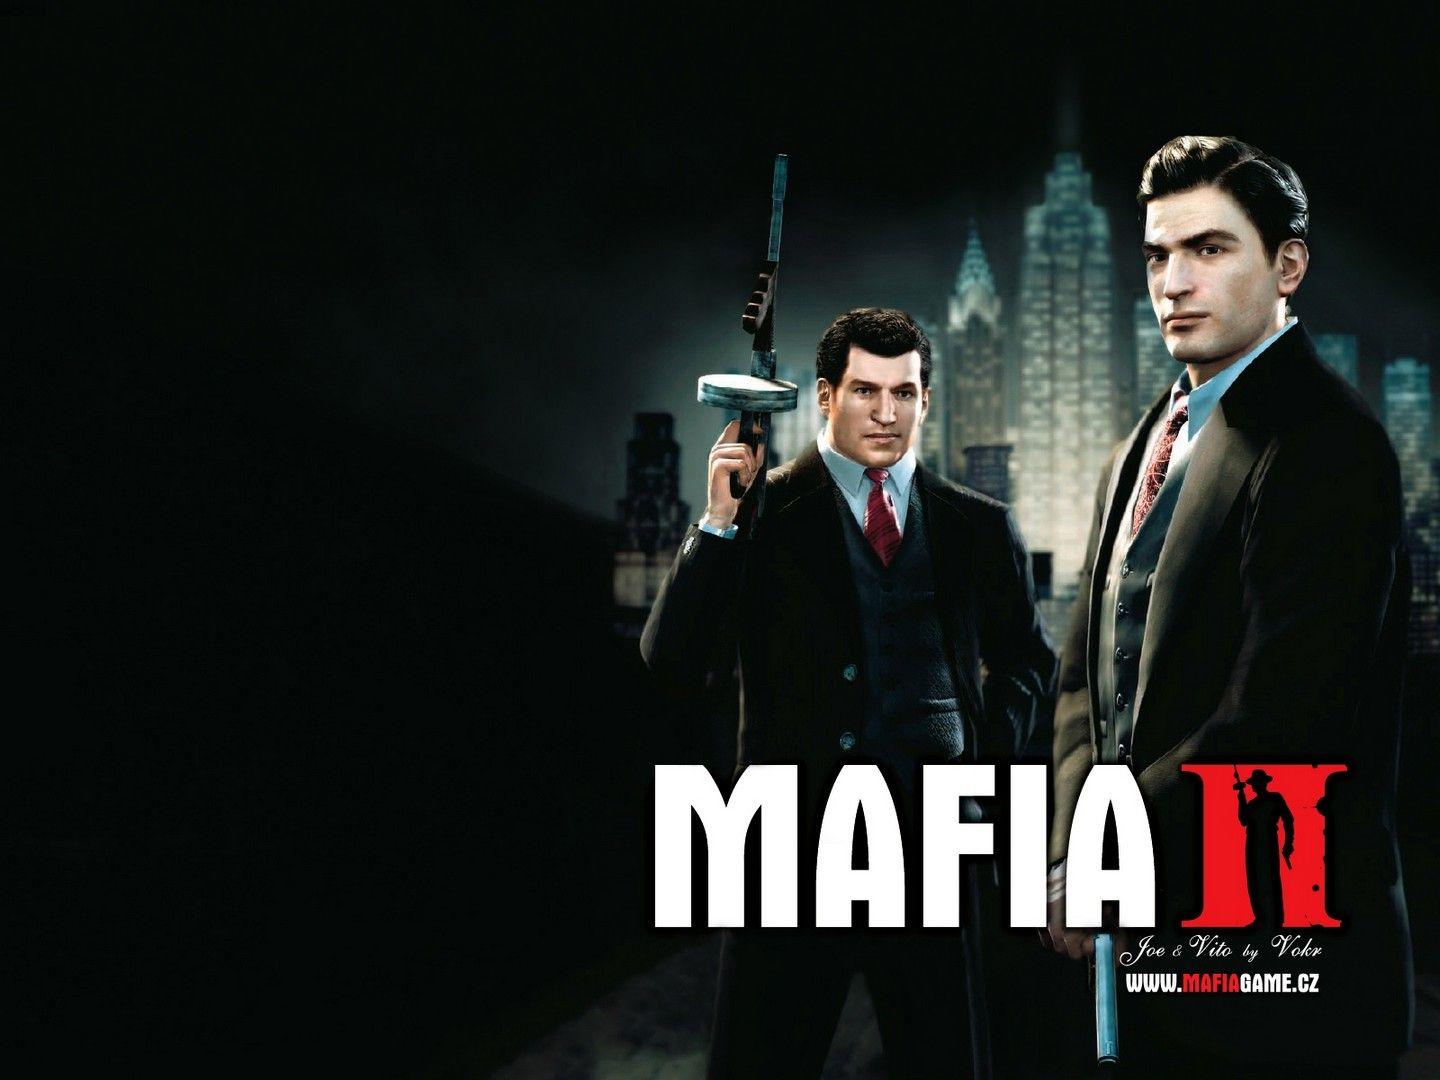 mafia ii wallpaper free. Mafia II wallpaper. Mafia